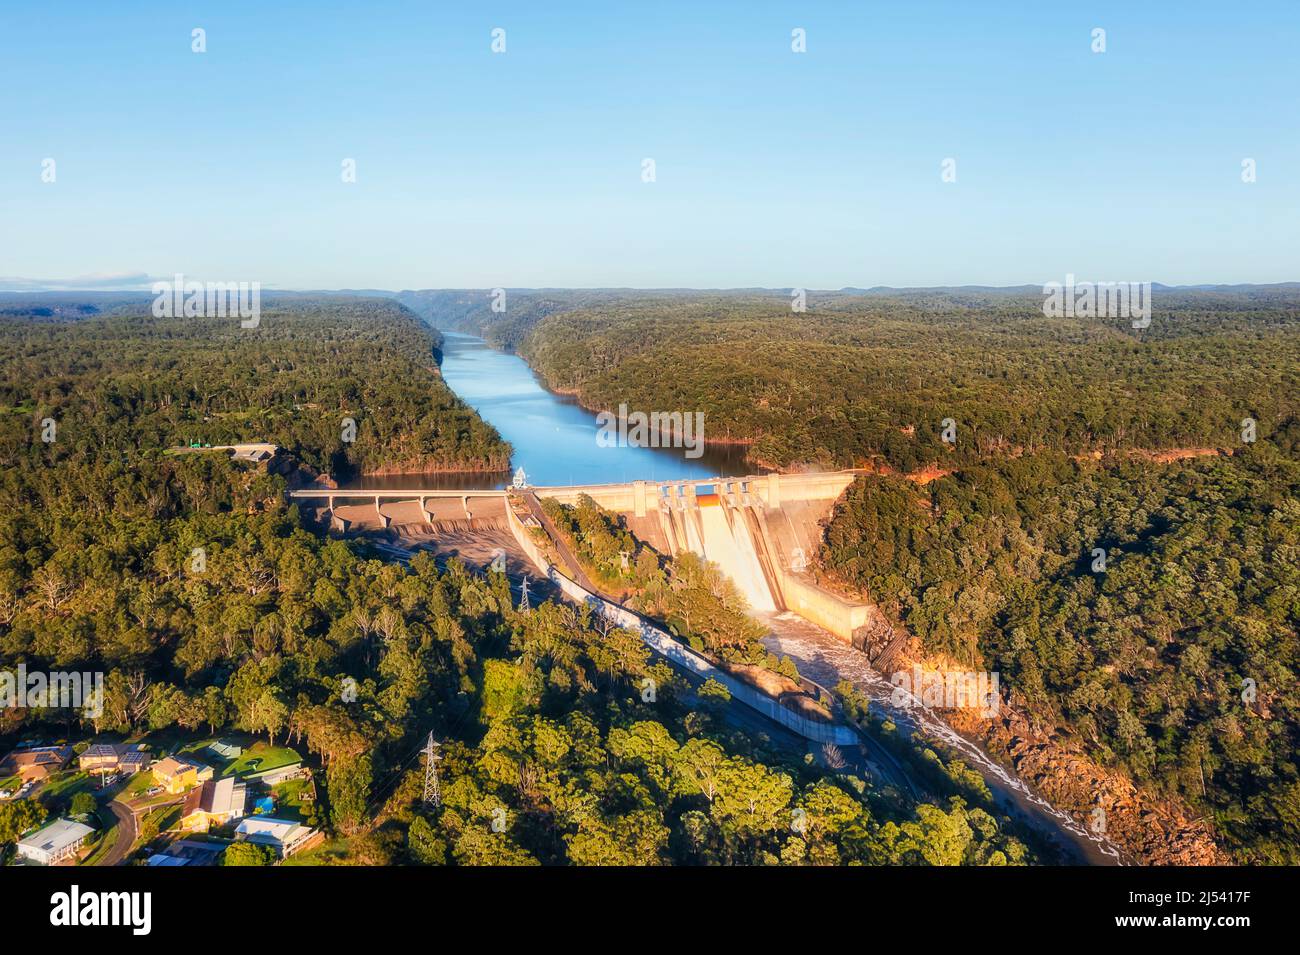 Warragamba Fluss durch Beton Stromerzeugung Damm in der Hochwassersaison überlaufendes und verschülltes Wasser geschlossen - Luftbild. Stockfoto